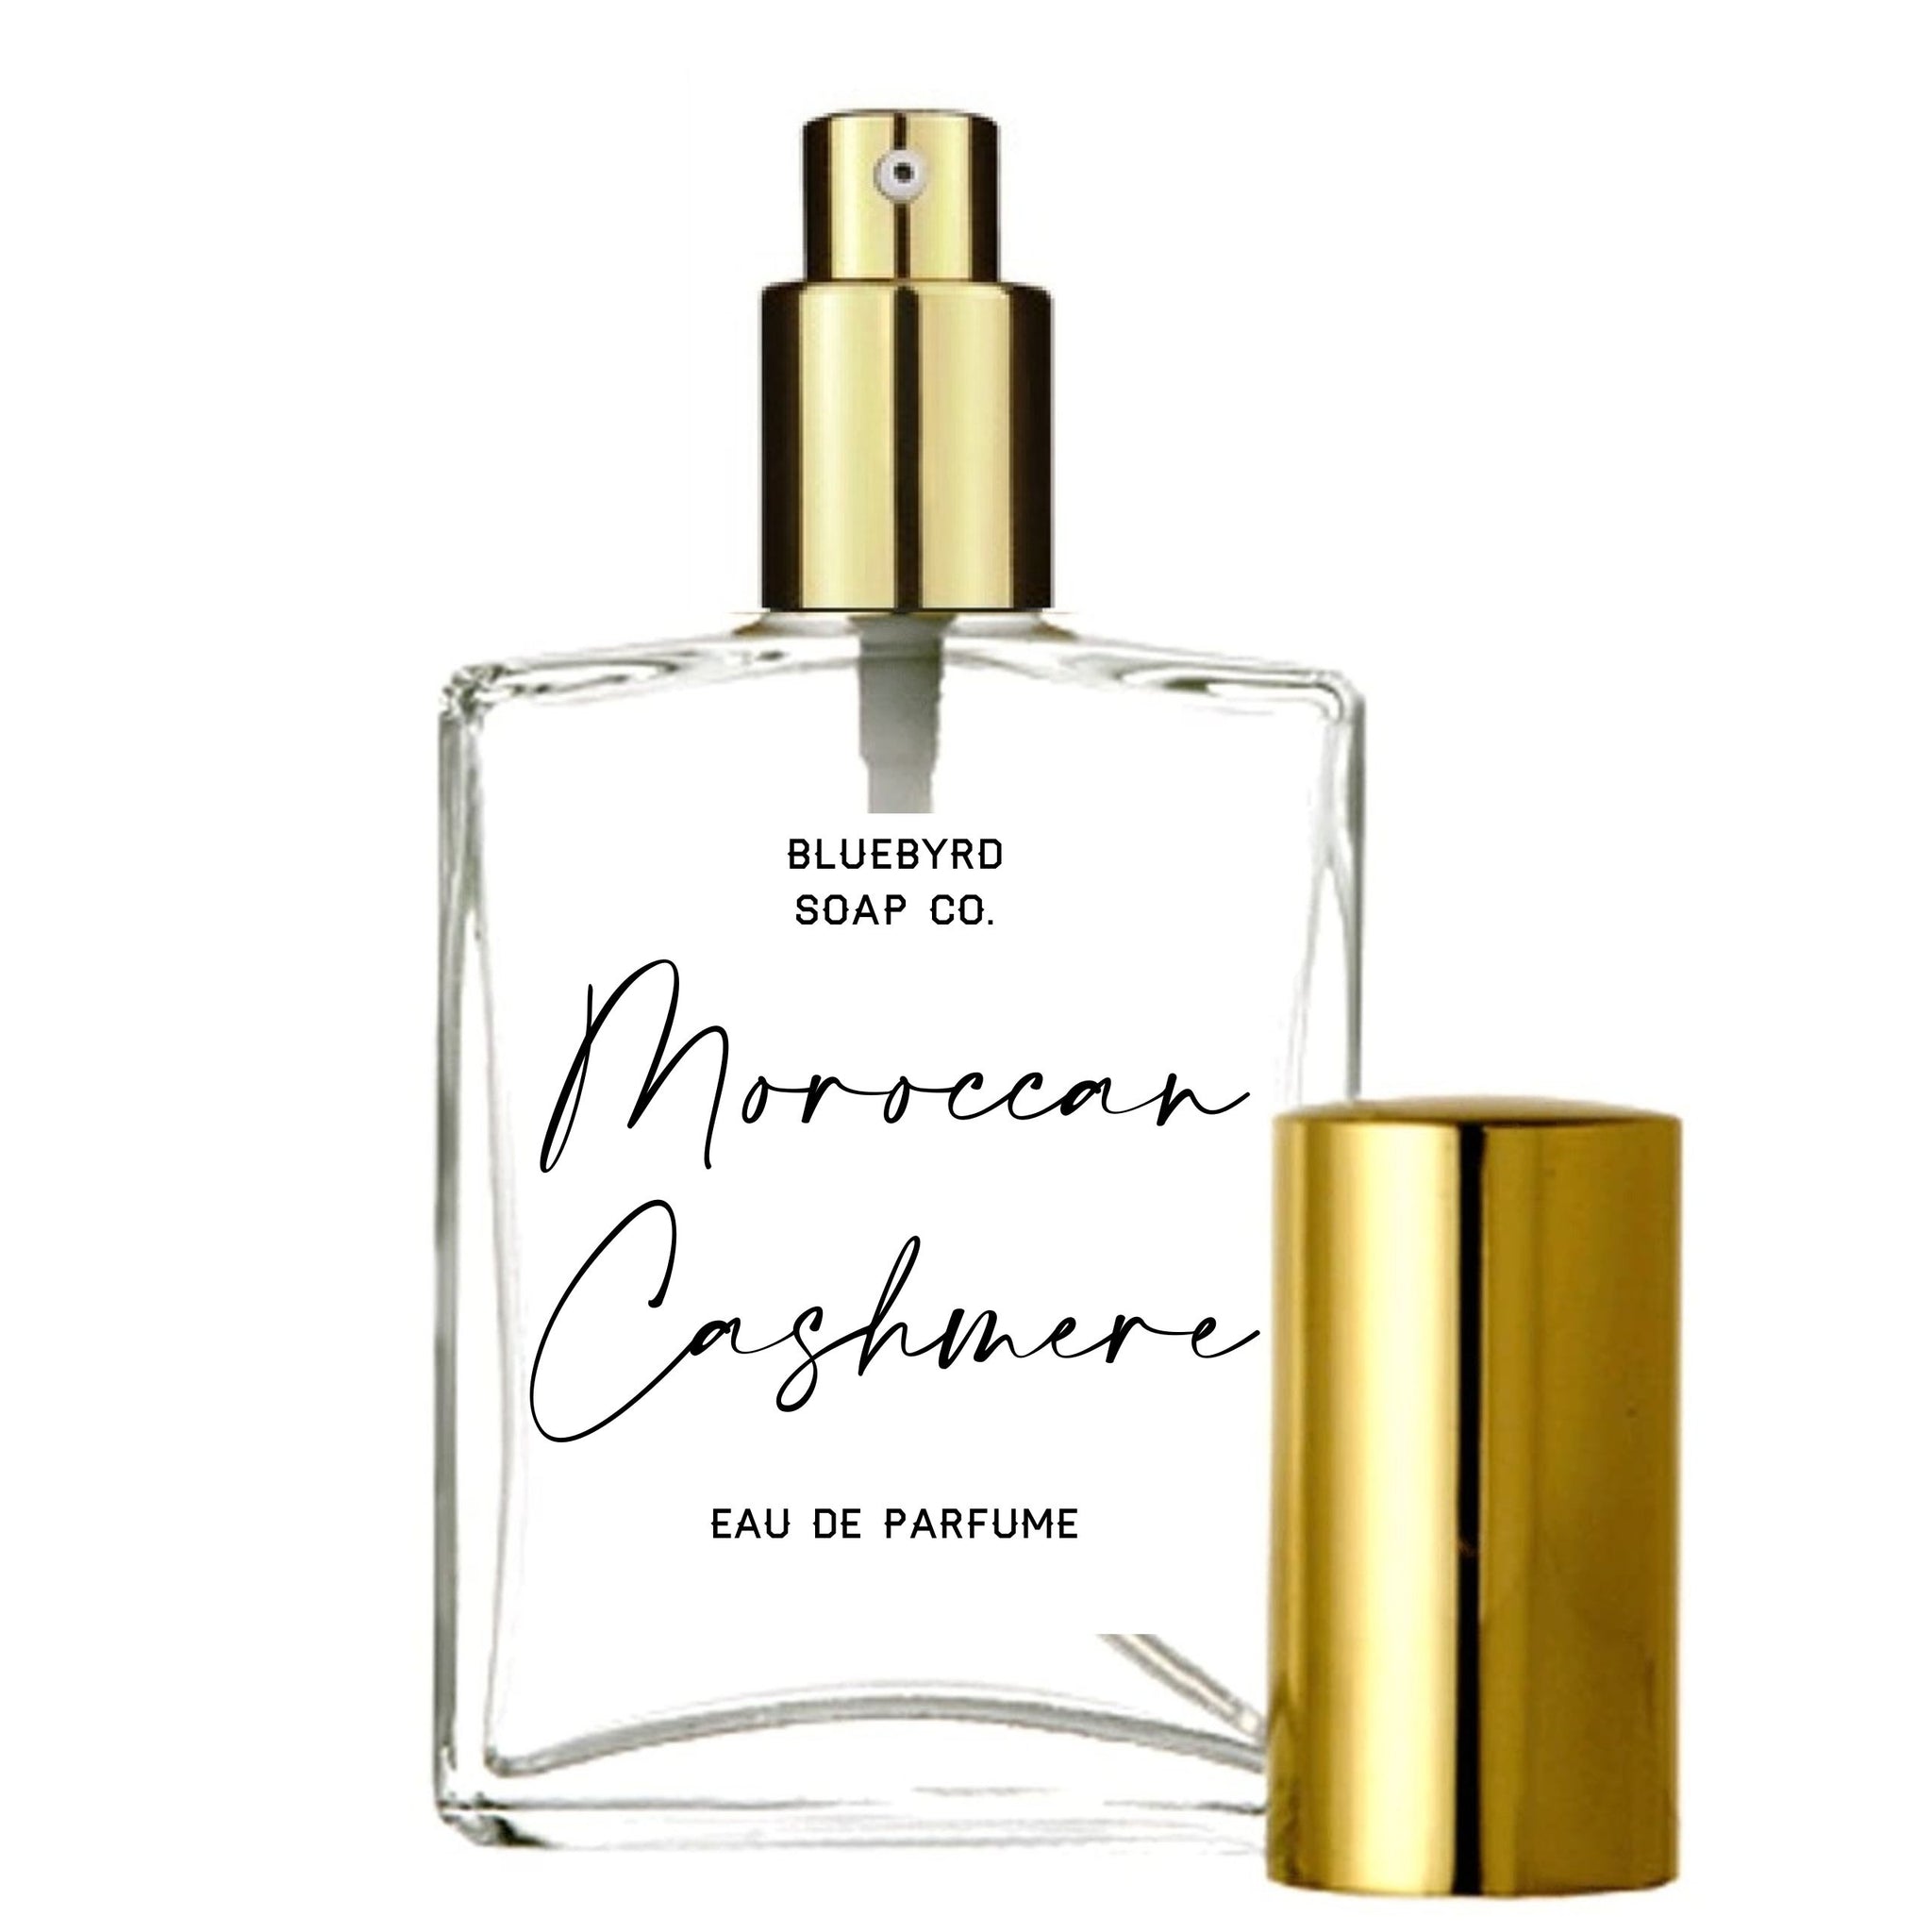 Lavender Cashmere - Perfume Oil